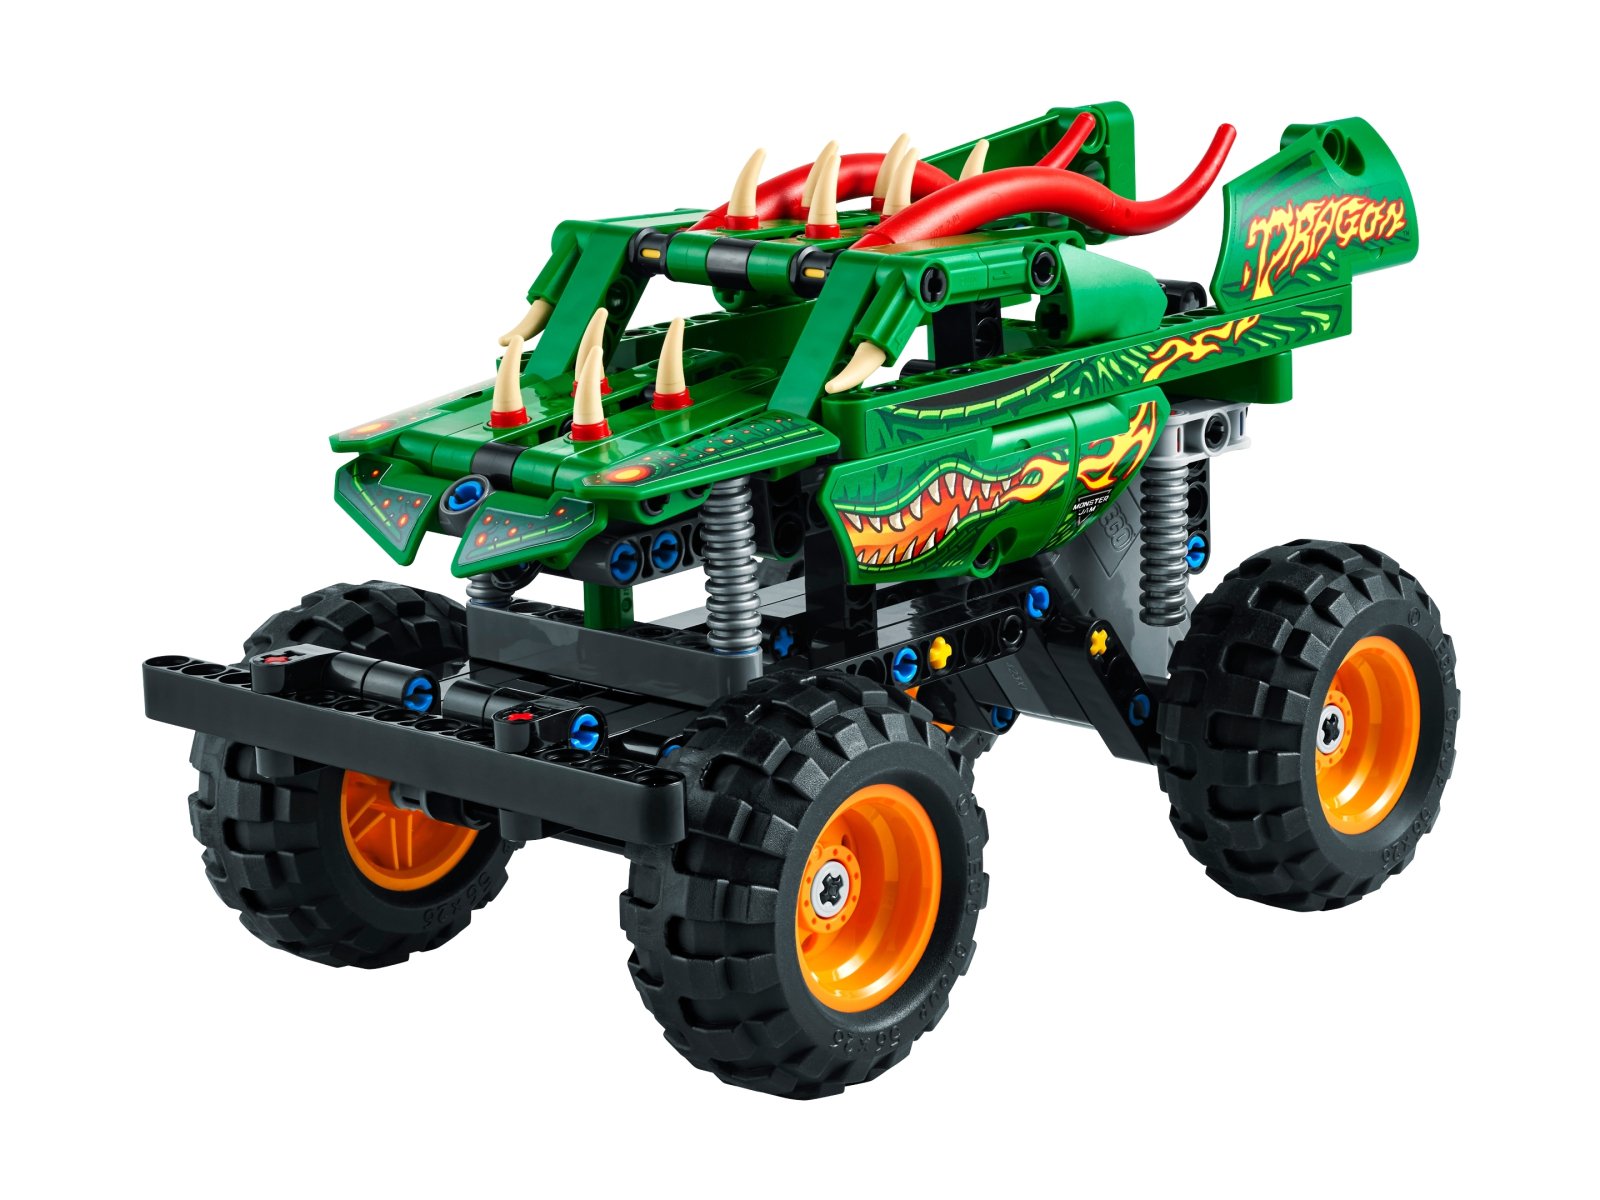 LEGO Technic Monster Jam™ Dragon™ 42149